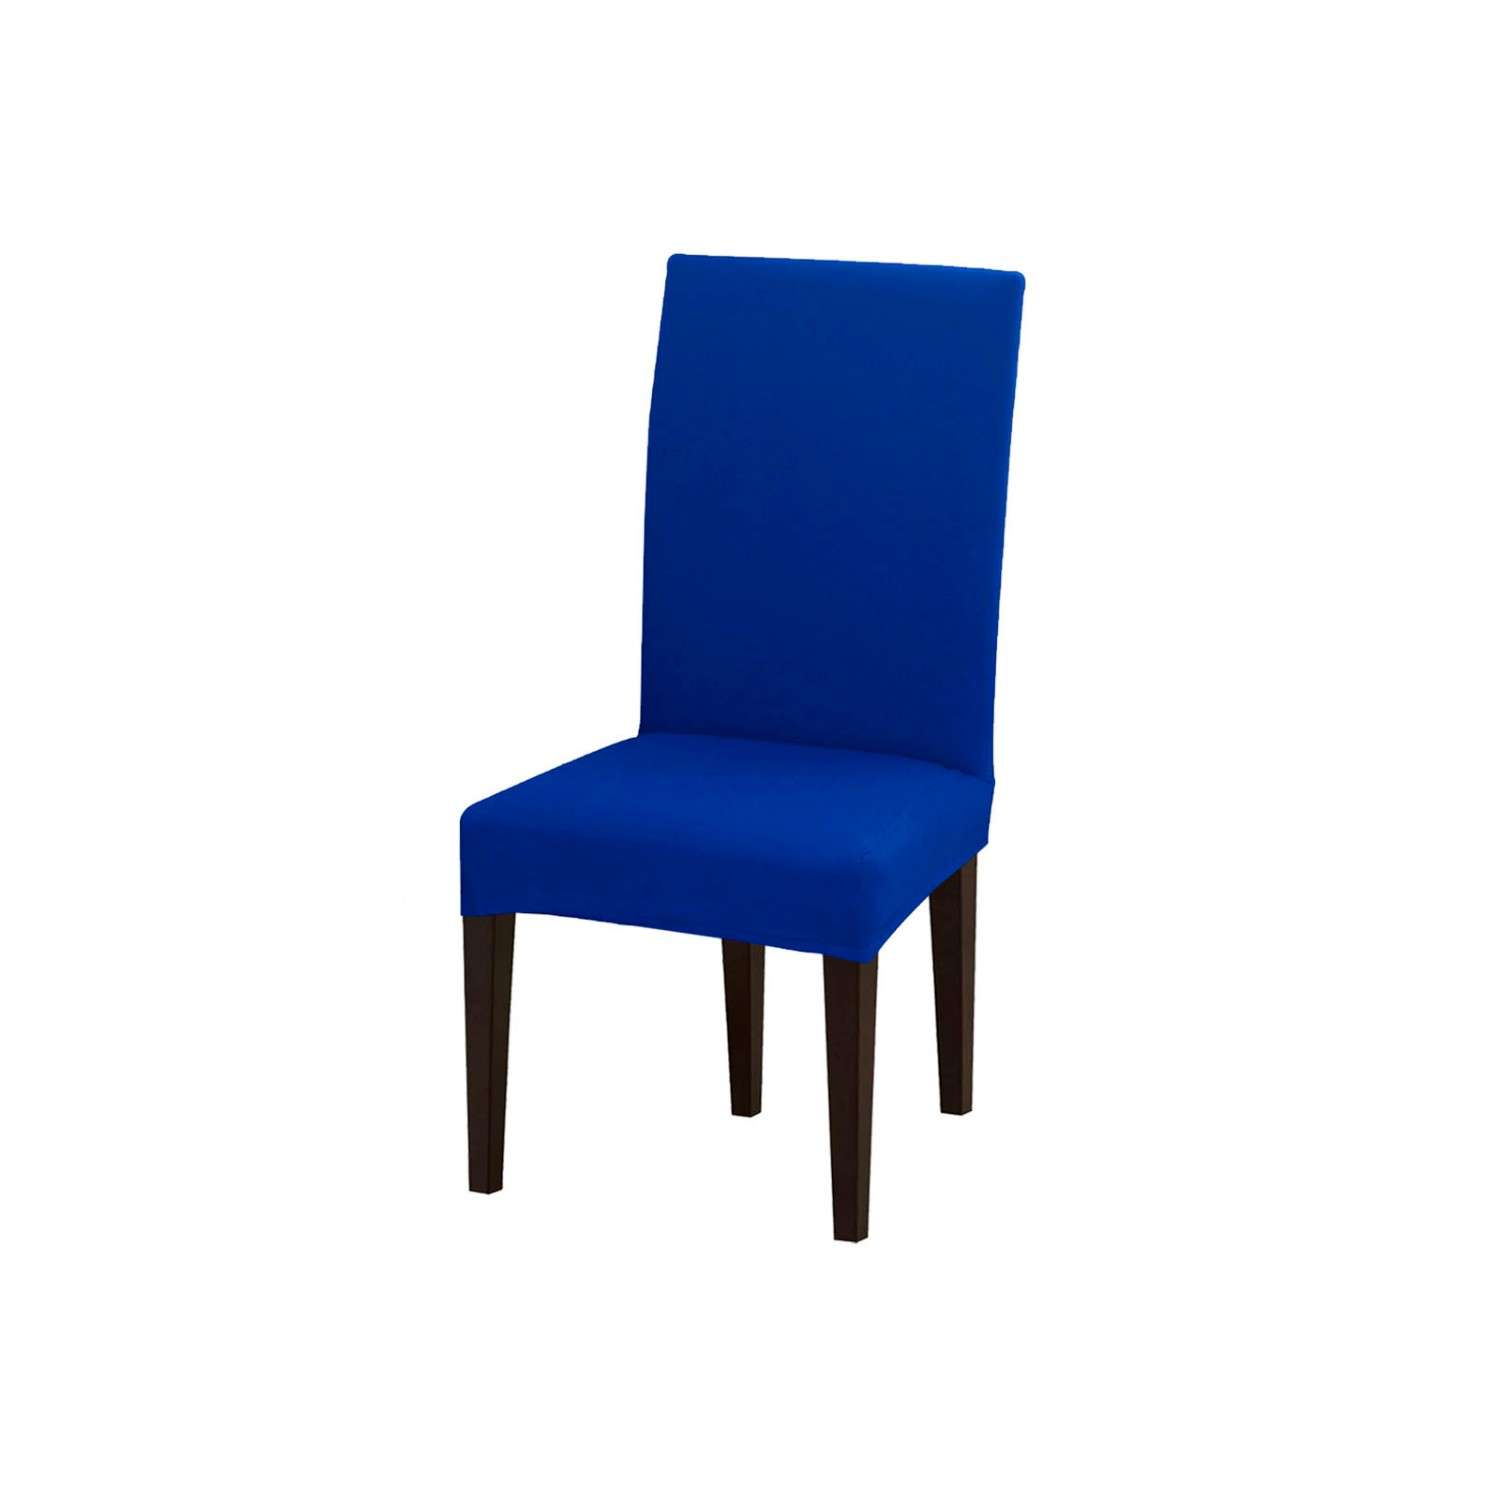 Чехол на стул LuxAlto Коллекция Jacquard синий - фото 1